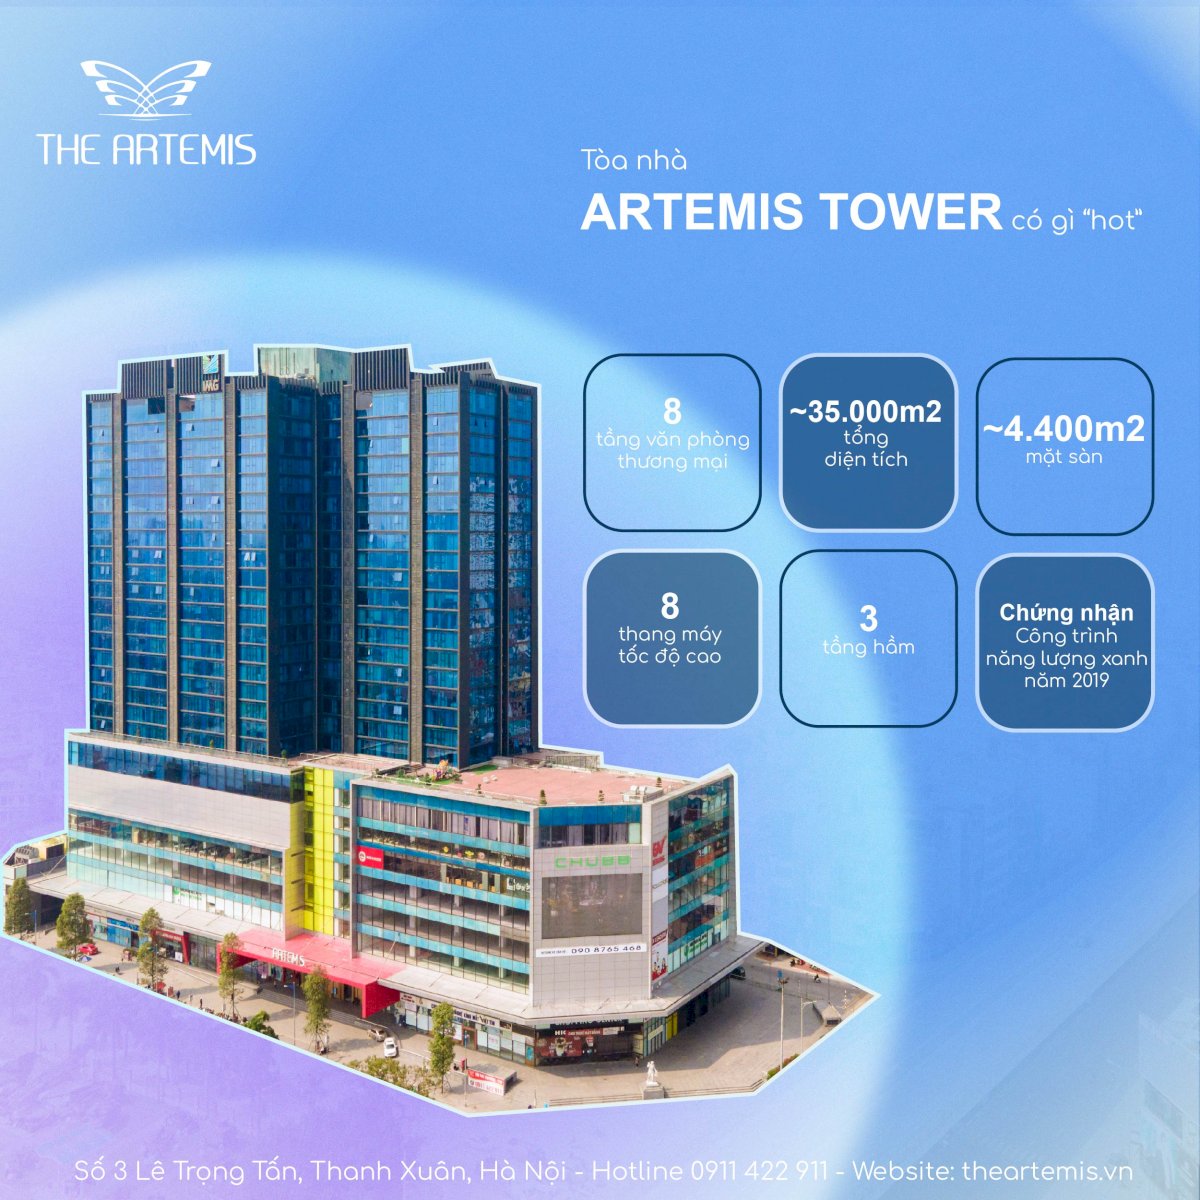 Artemis Tower cho thuê sàn văn phòng - thương mại quận Thanh Xuân mỗi sàn hơn 4000m2 LH 091142291